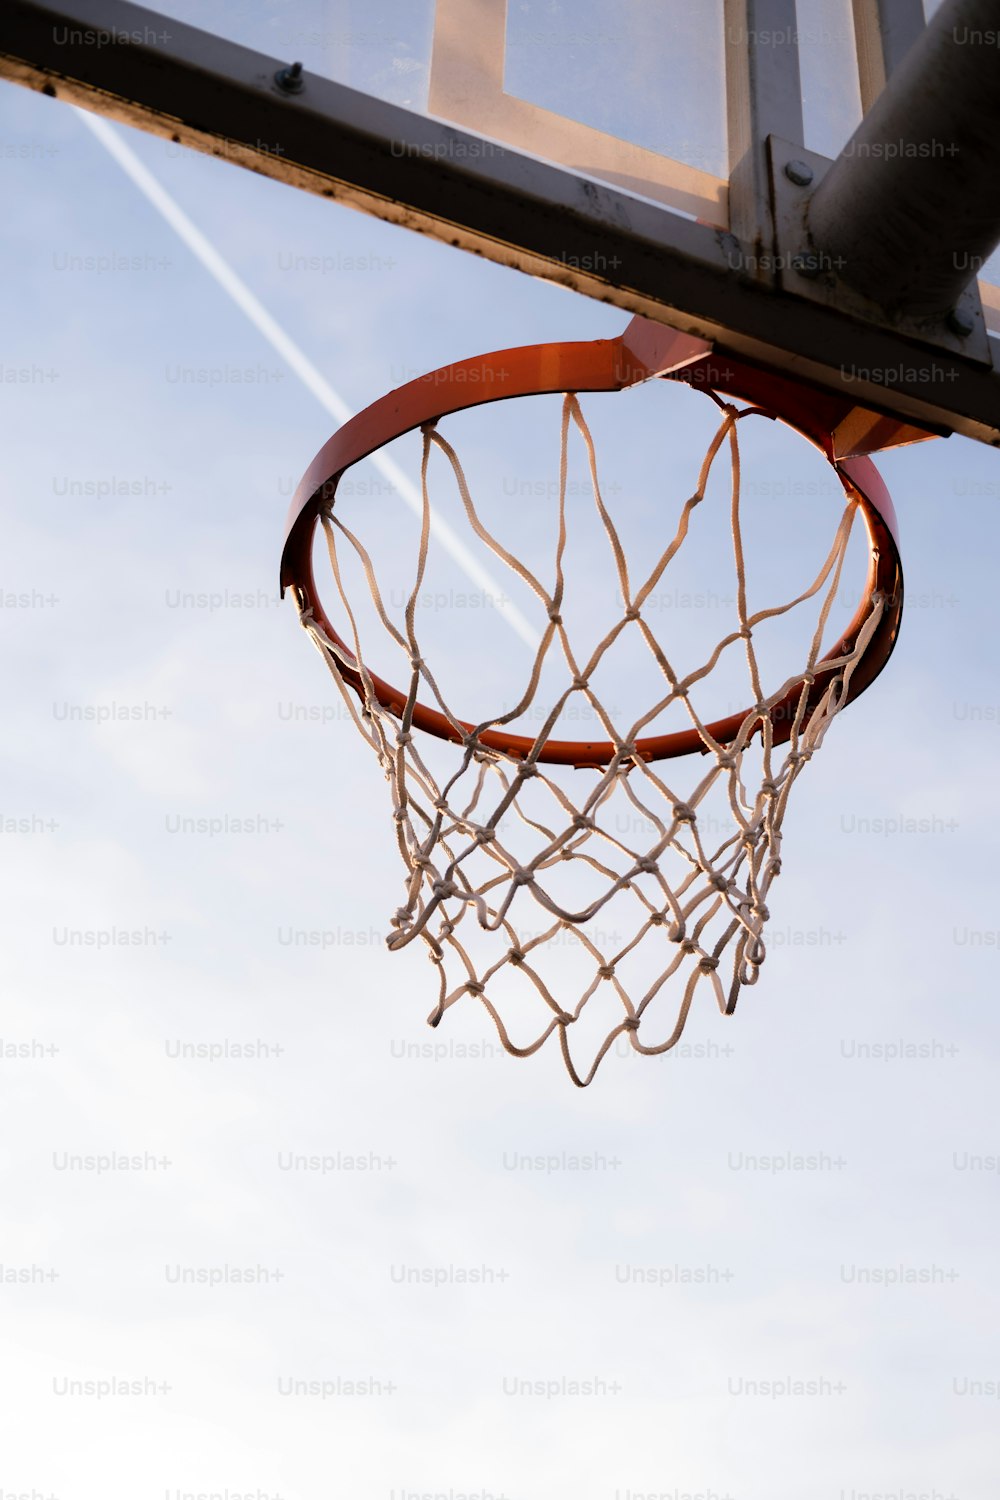 uma bola de basquete passando pela borda de um aro de basquete